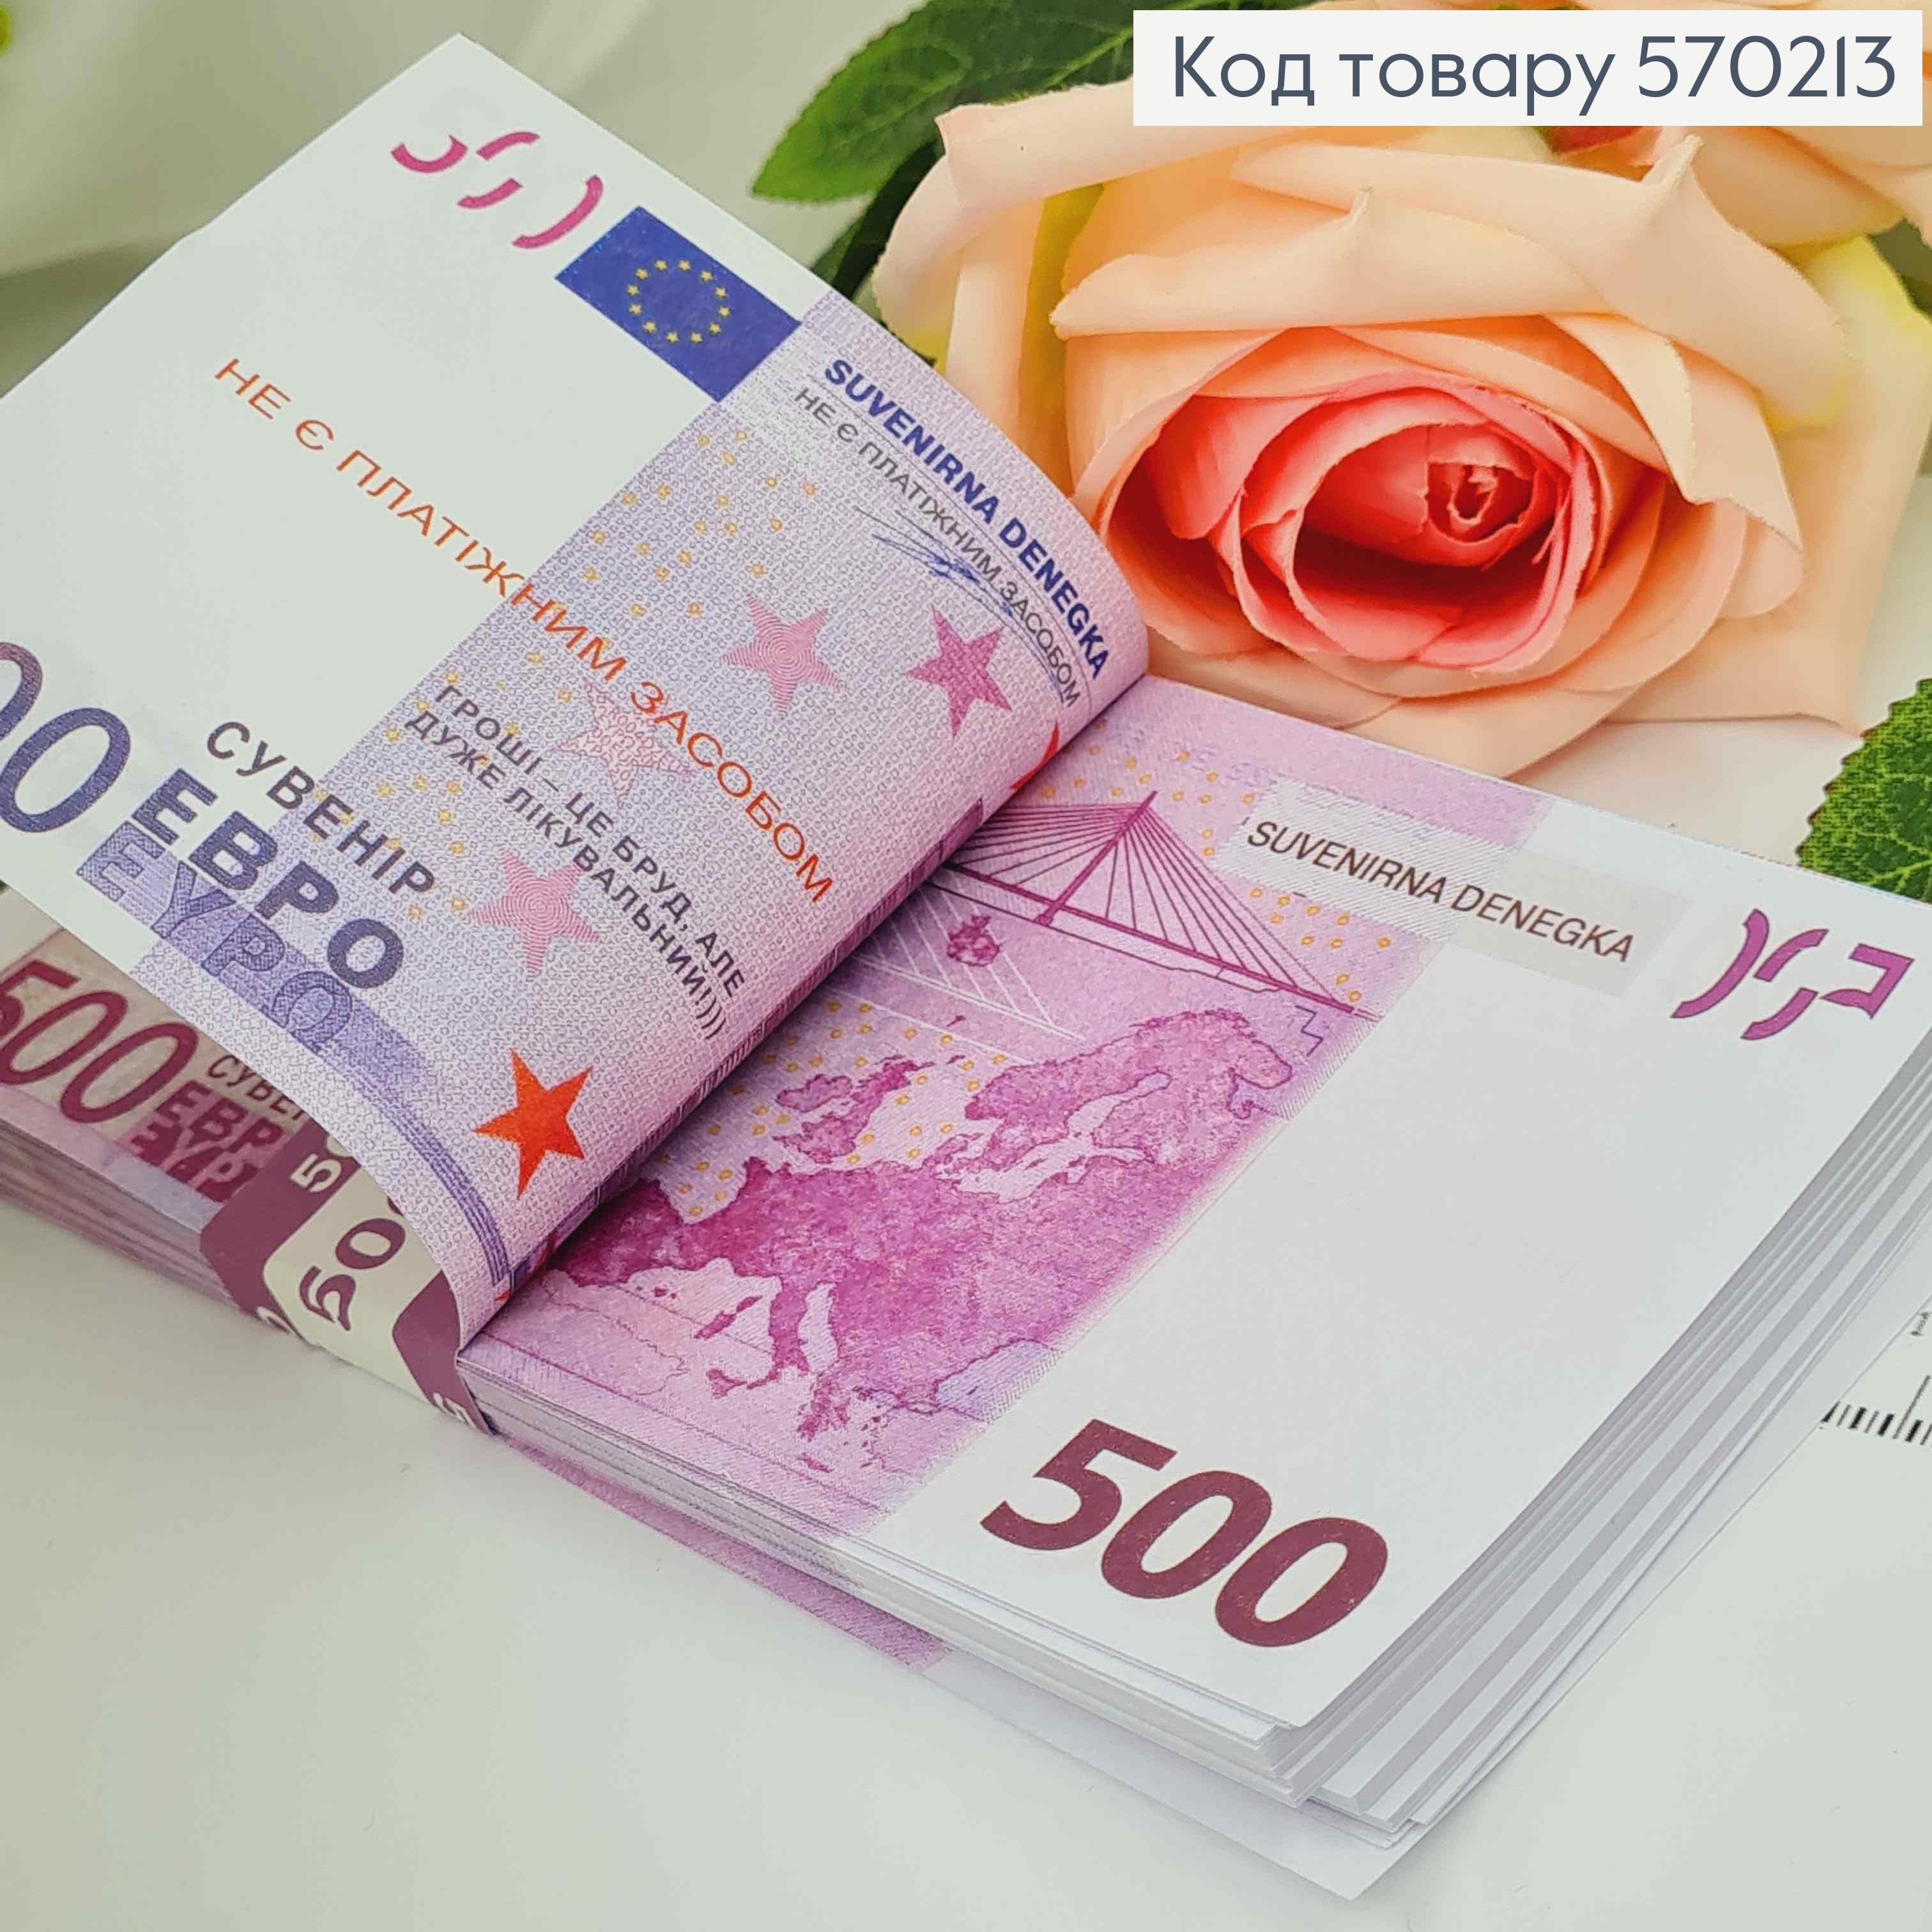 Сувенирные деньги, 500 евро, Уп/100шт, 16*7,5см 570213 фото 2